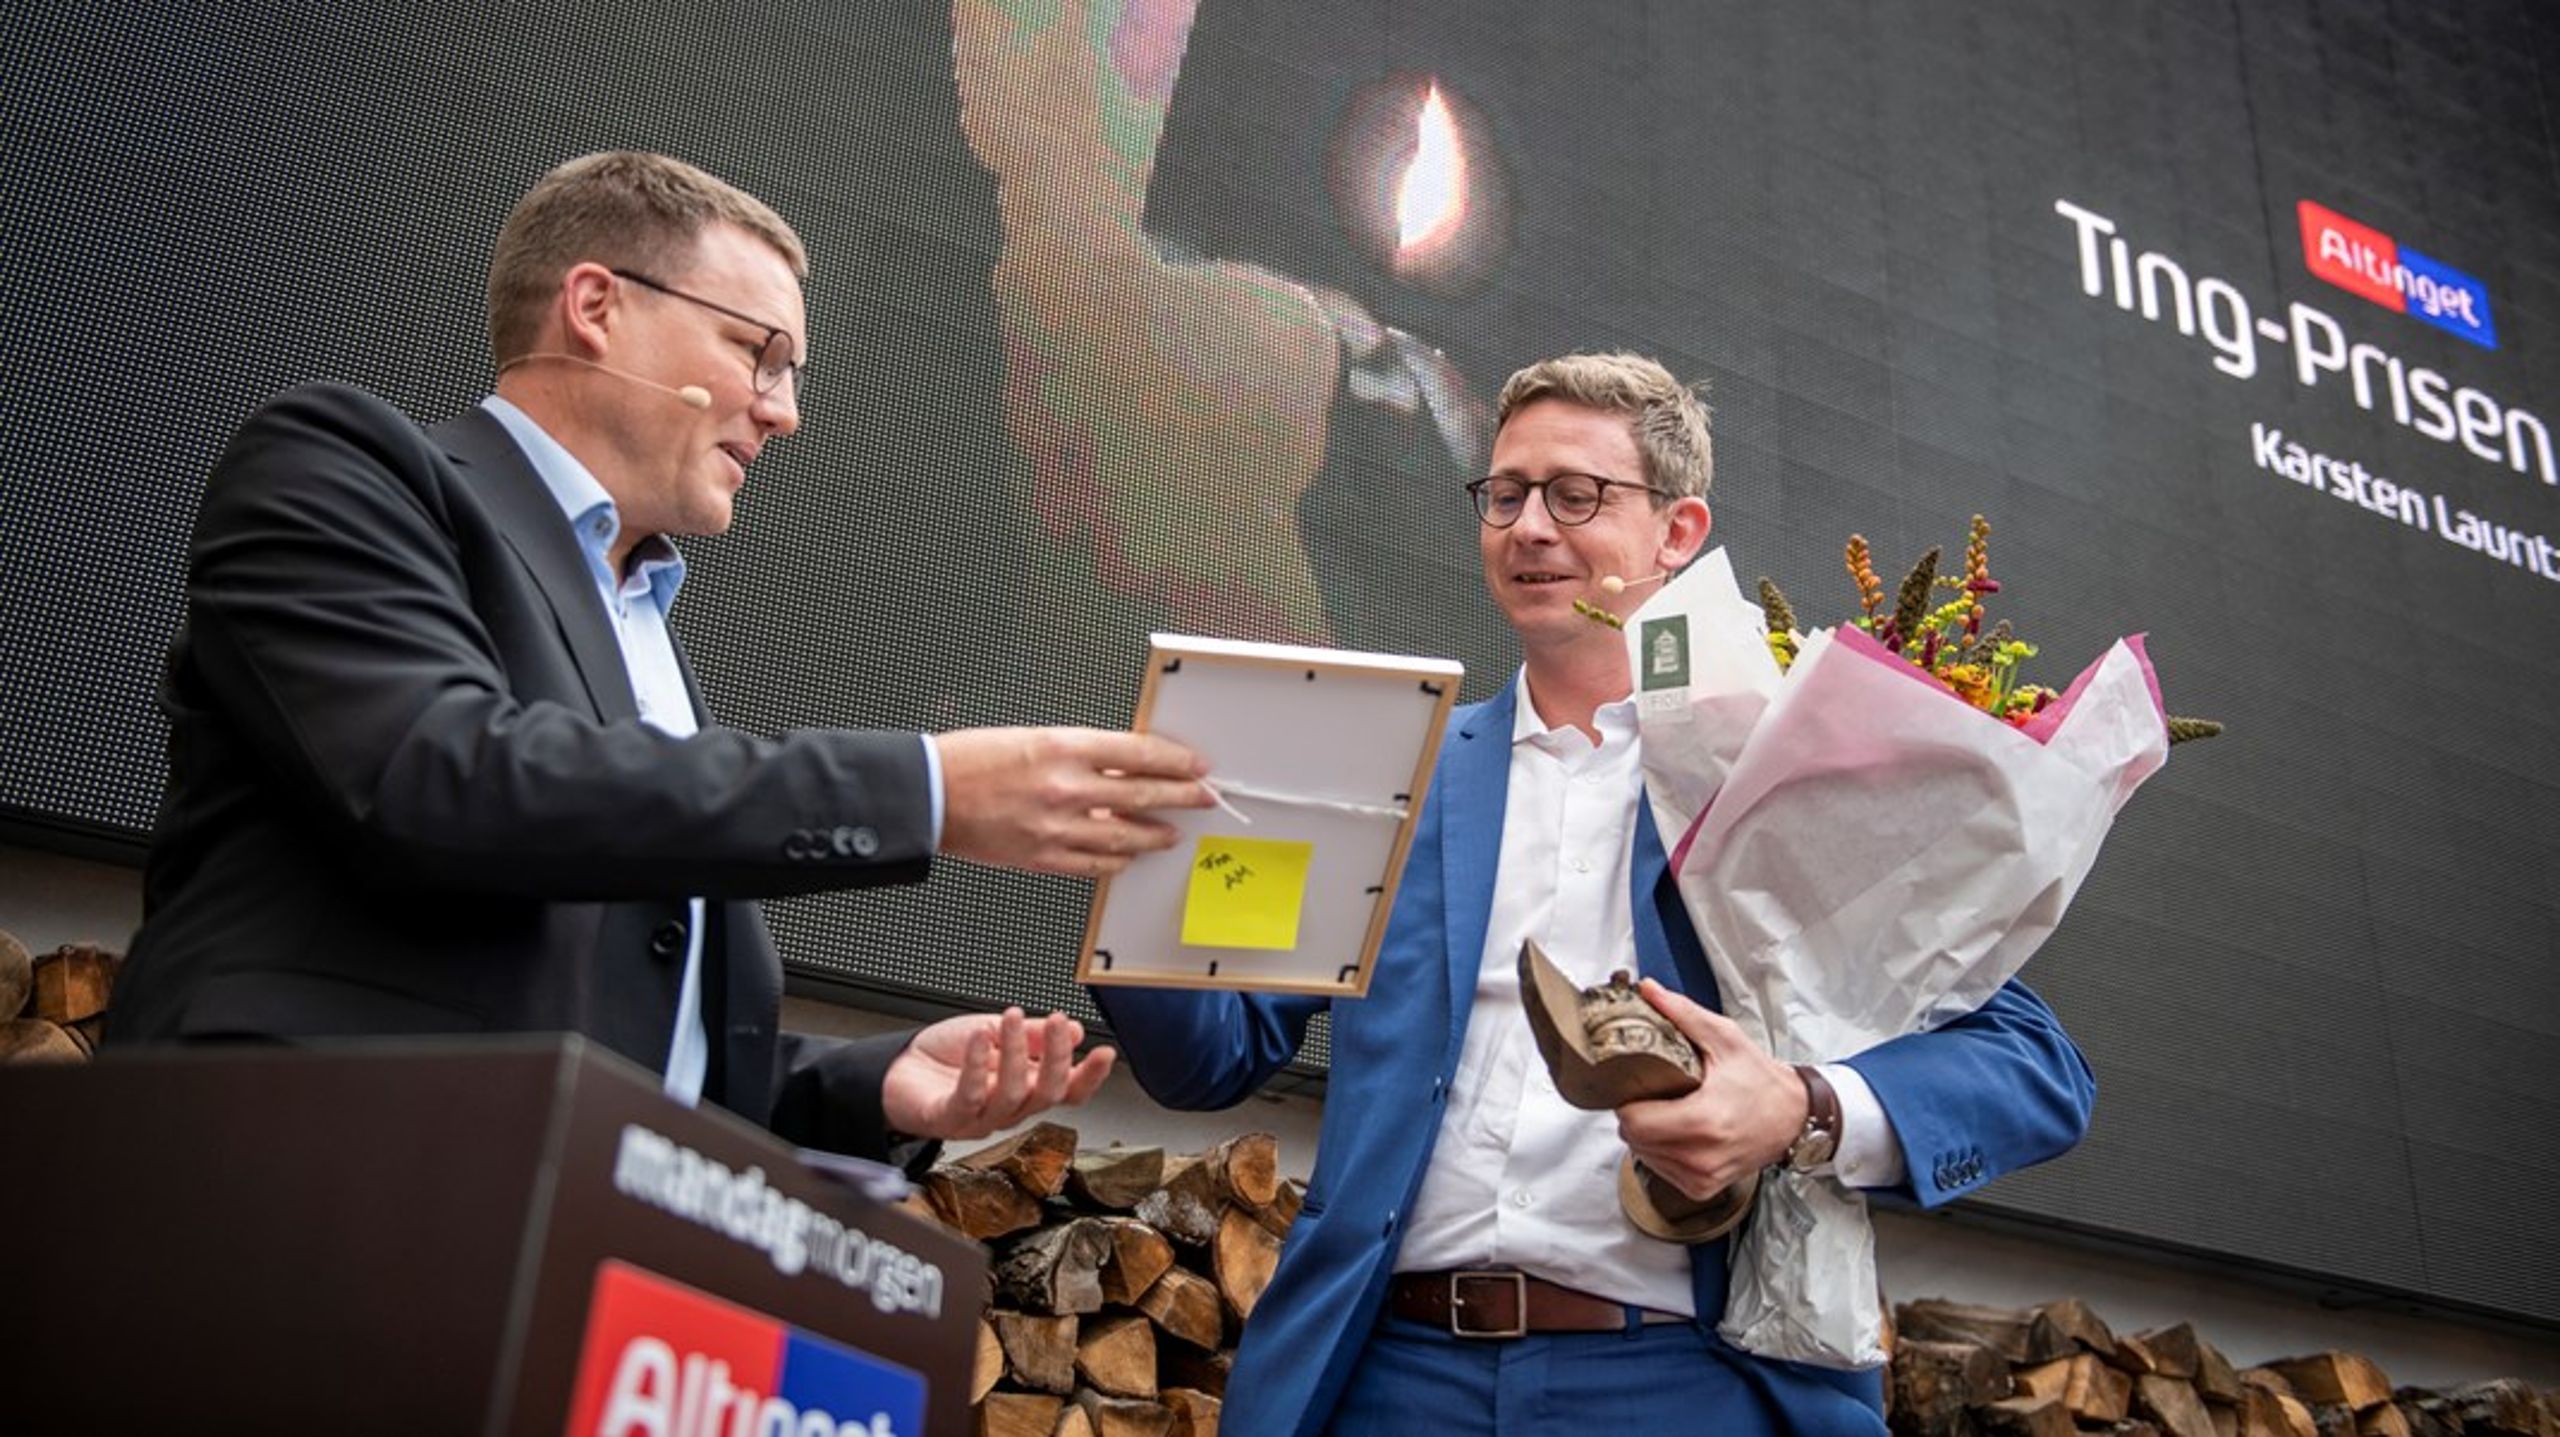 Chefredaktør Jakob Nielsen overrækker Ting-prisen til Venstres gruppeformand Karsten Lauritzen